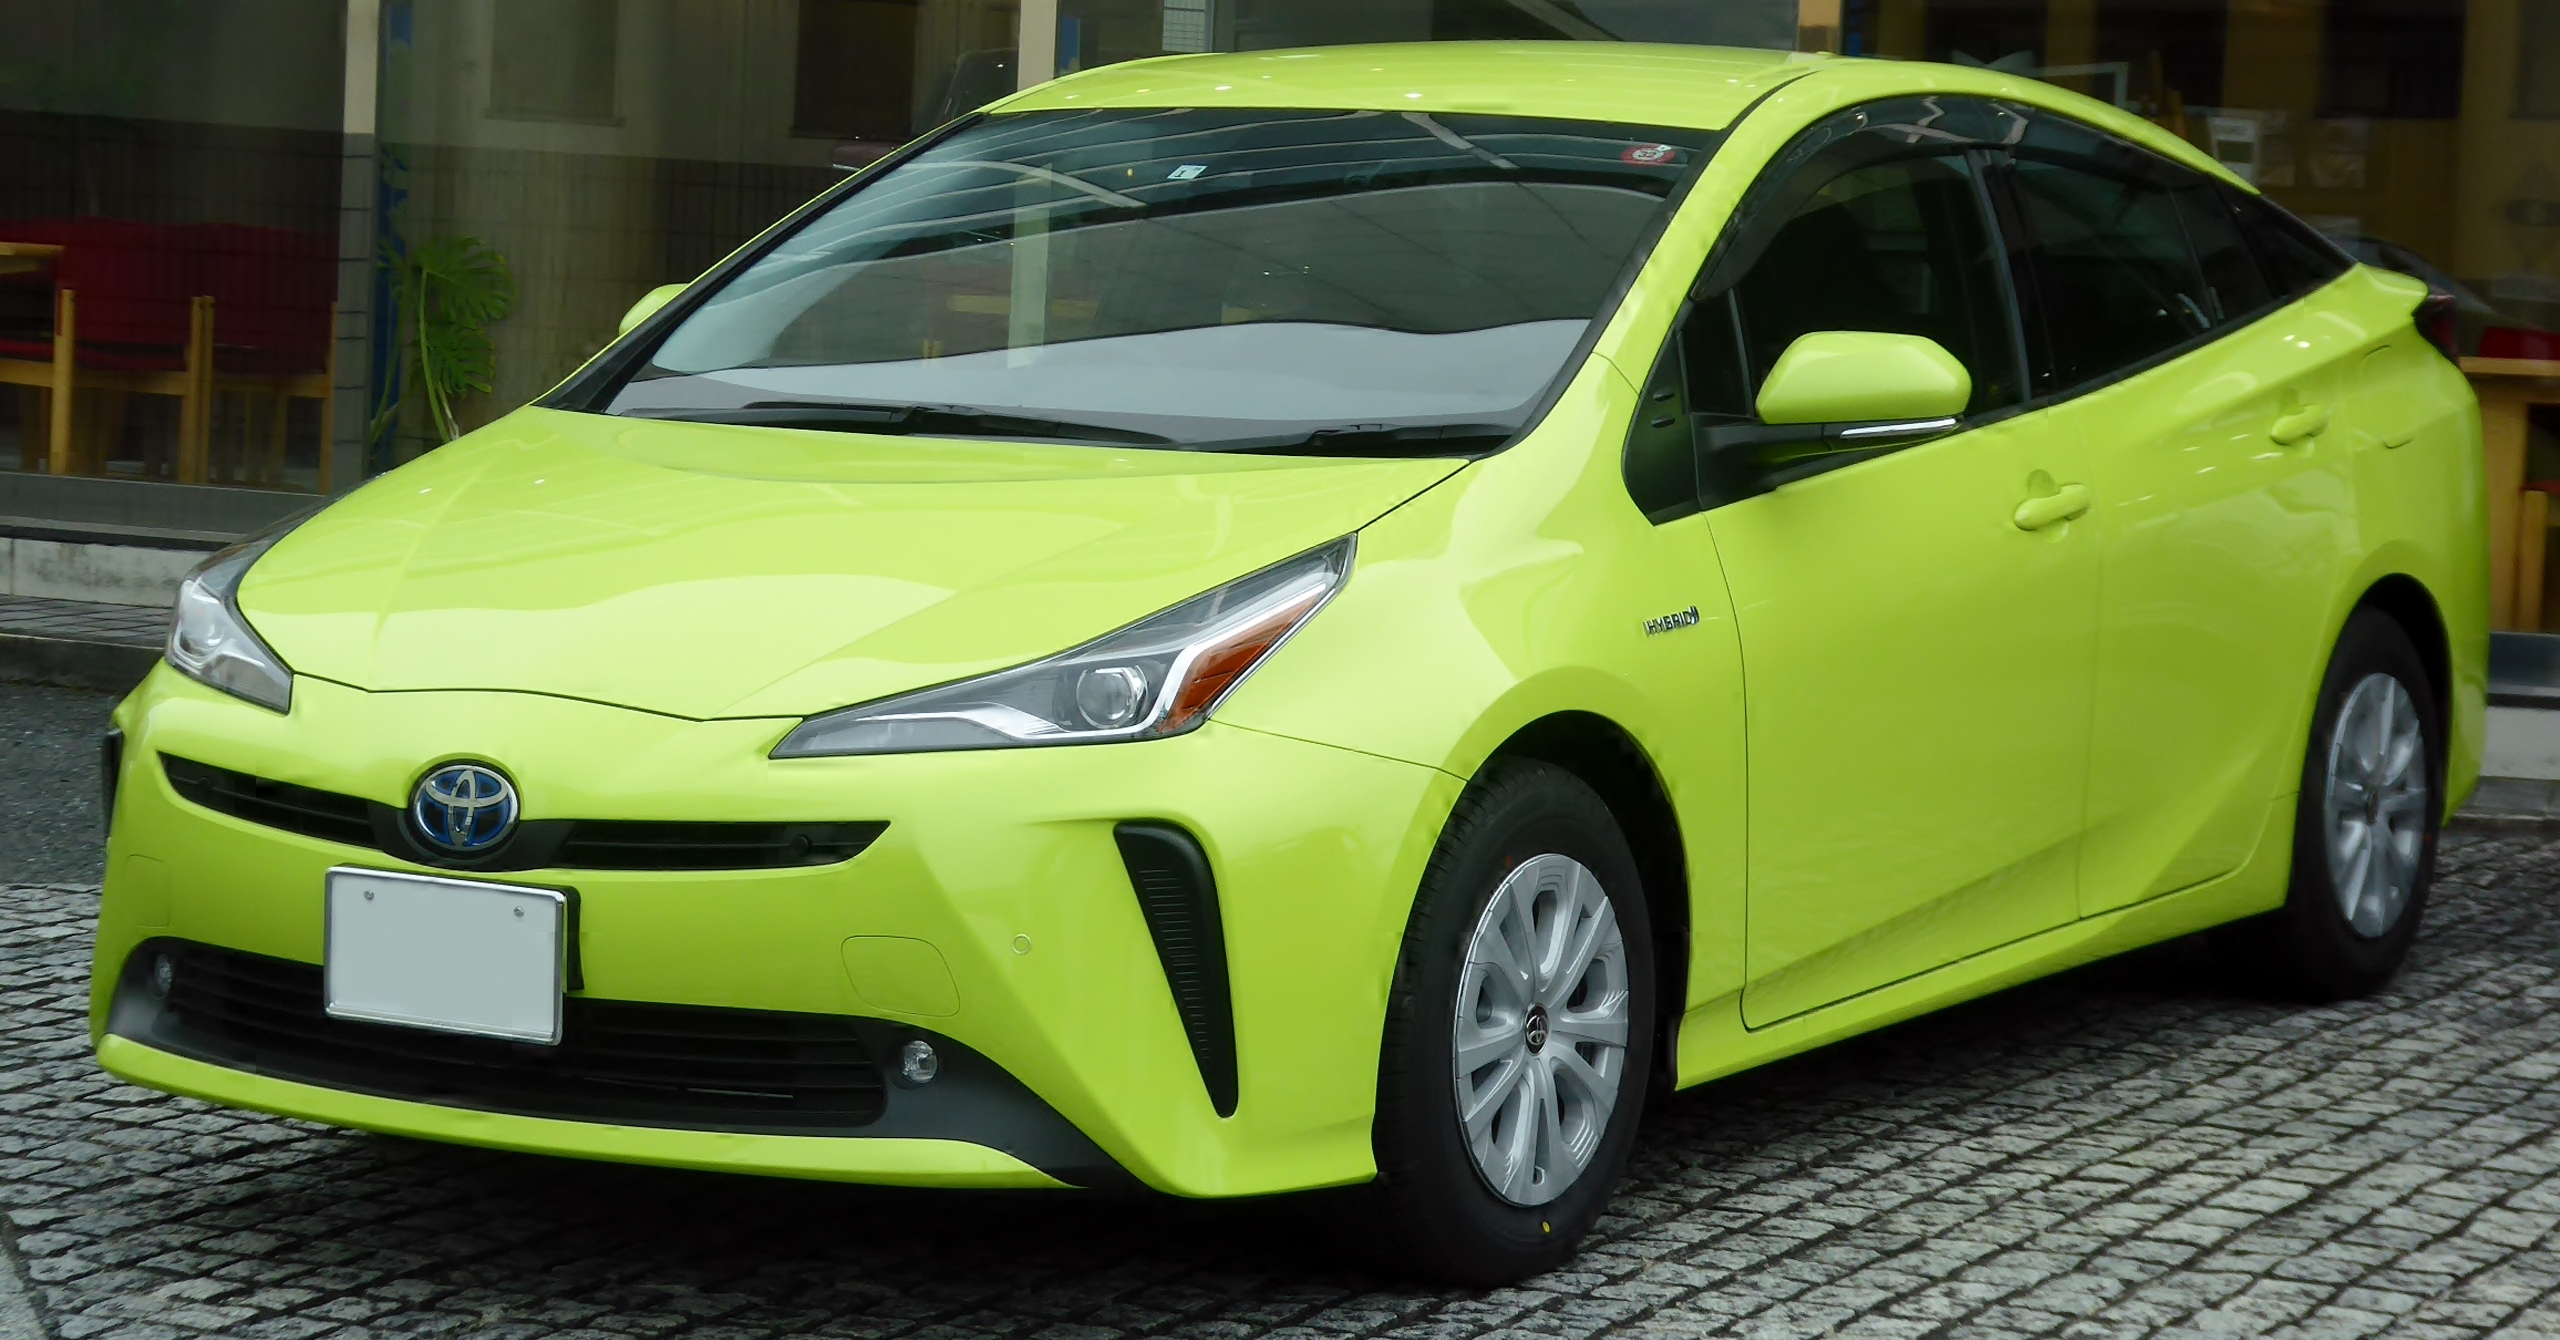 Thay bình ắc quy xe Toyota Prius giá rẻ, bảo hành chính hãng, lắp đặt tận nơi tại Bình Dương